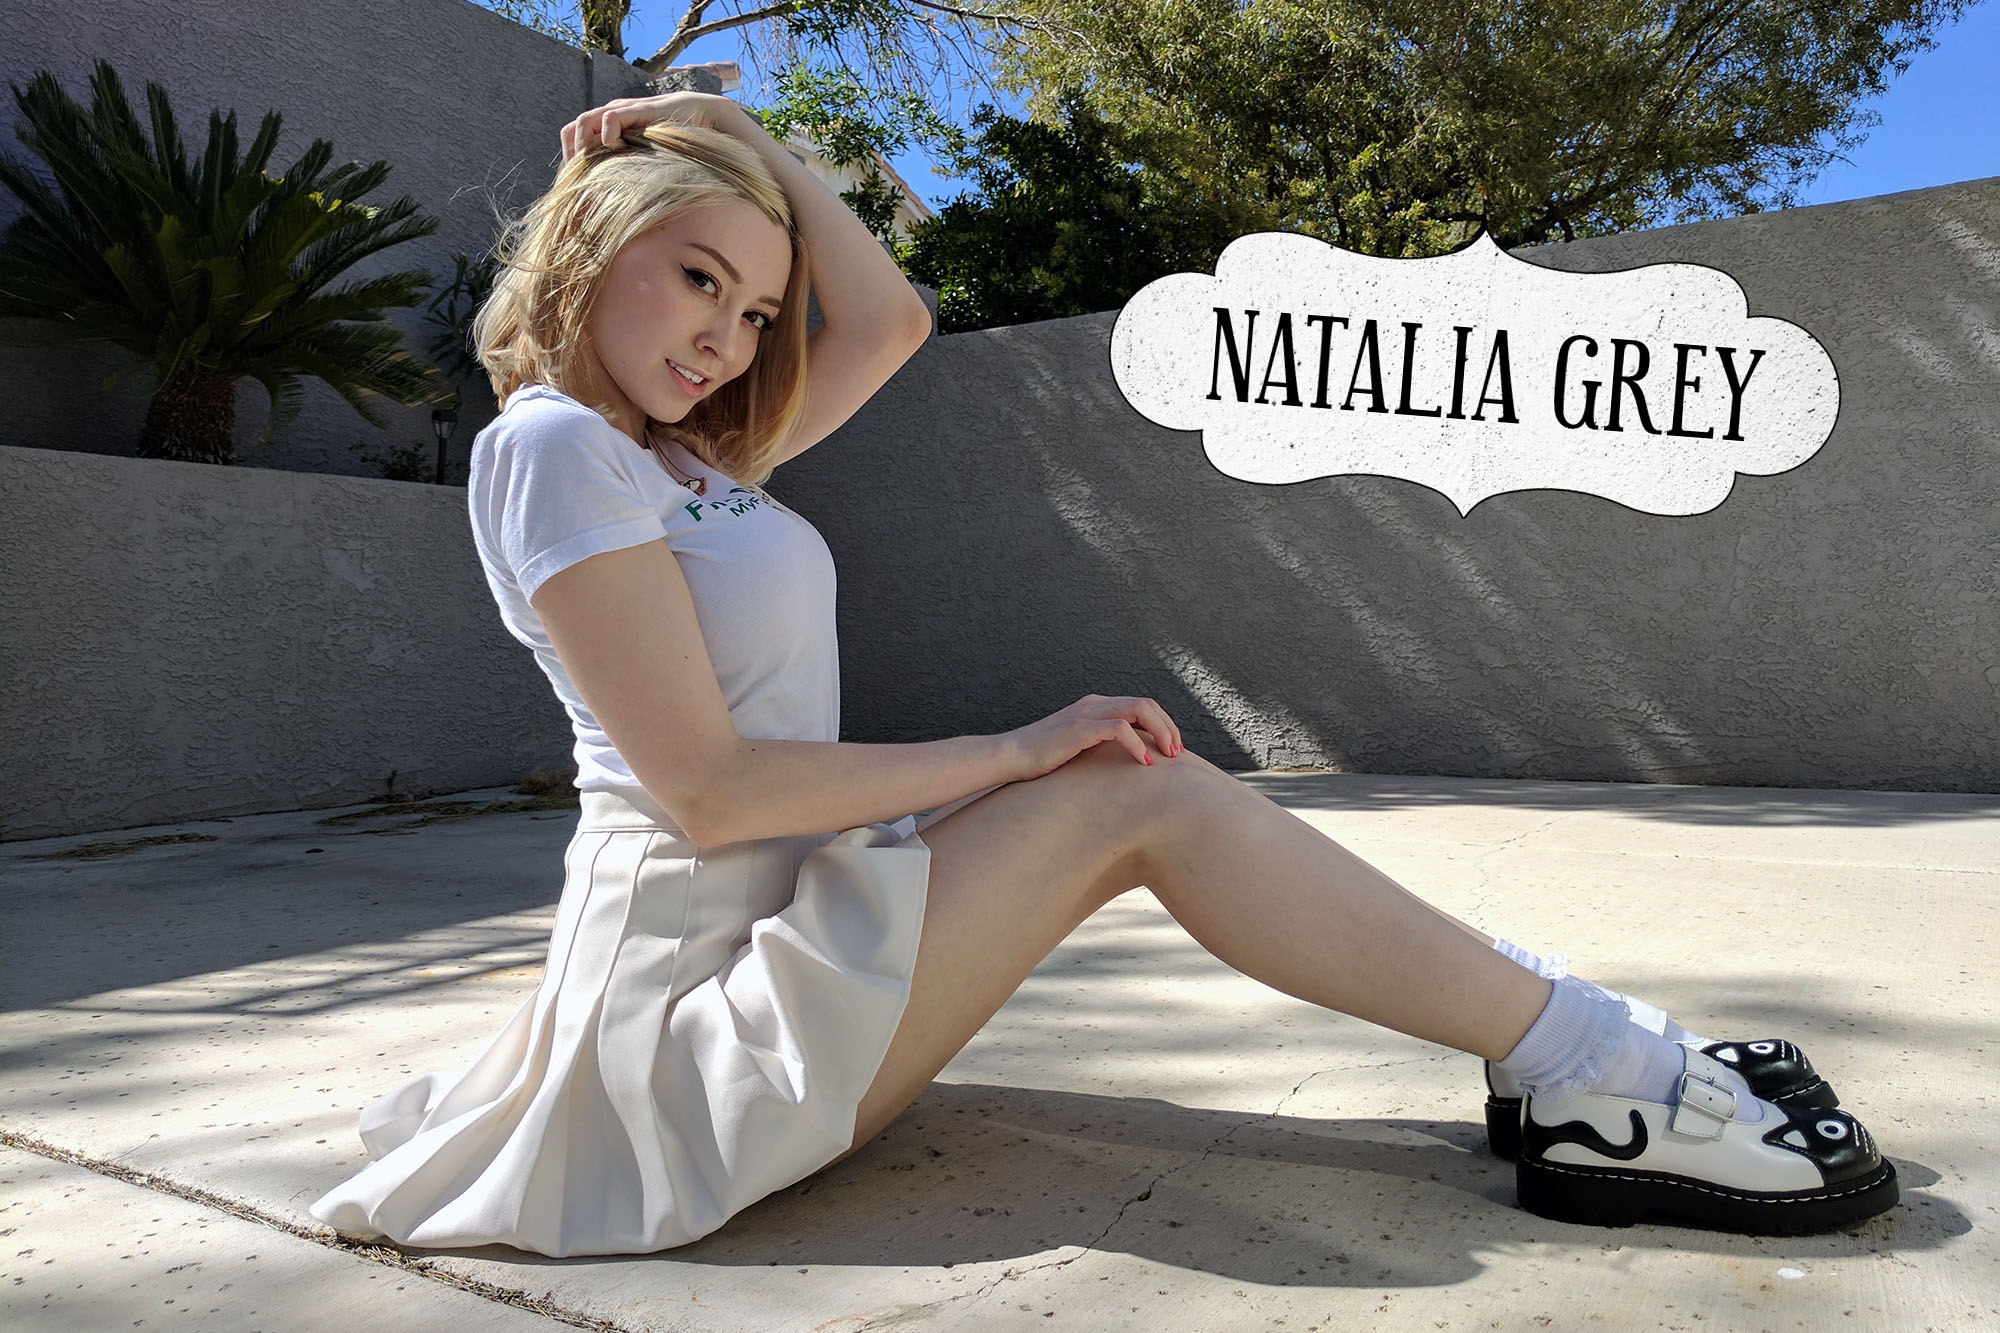 Natalia Grey on Twitter.